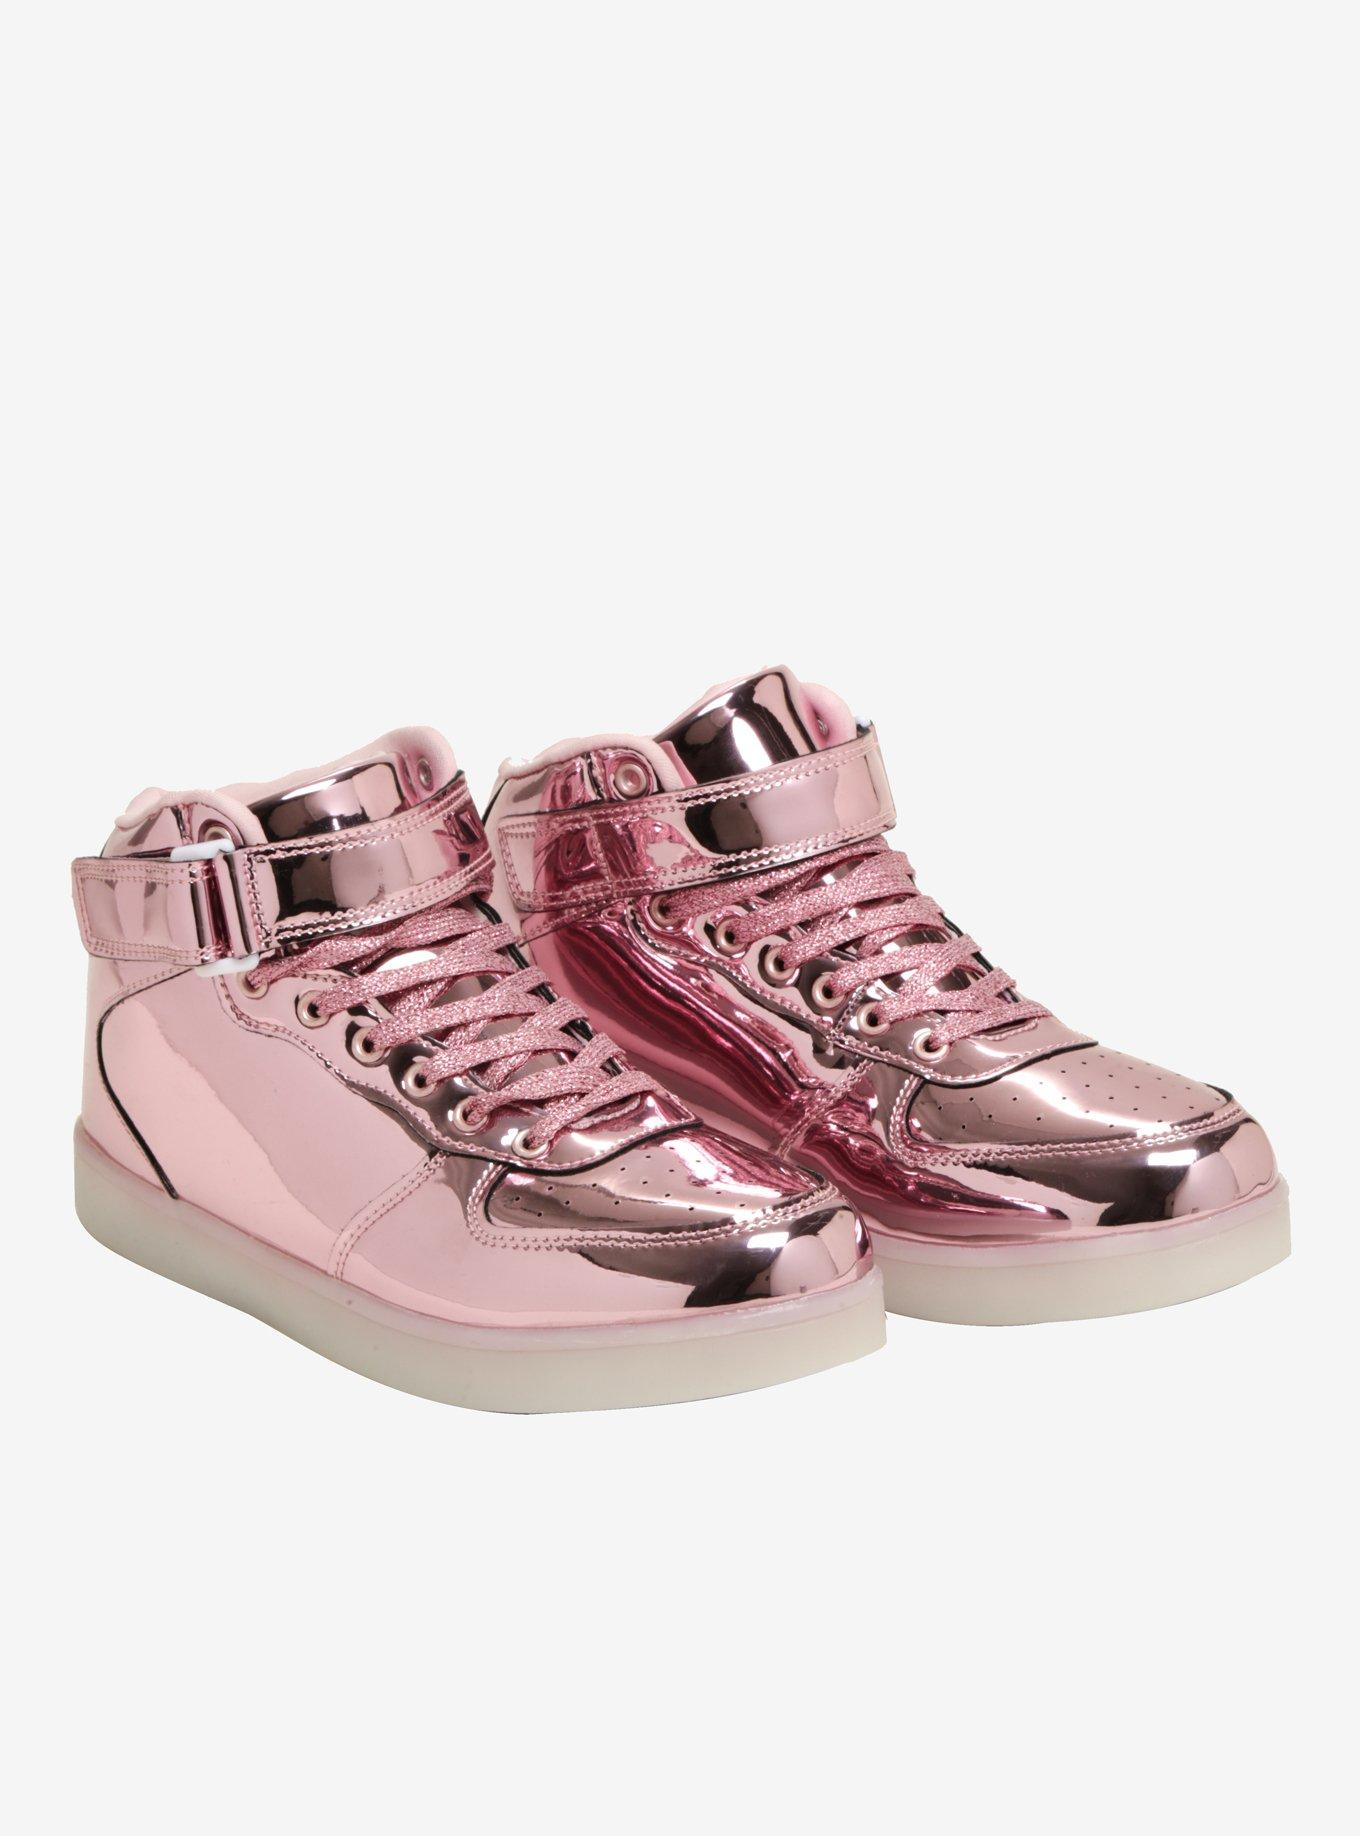 Pink Hi-Top LED Light Up Sneakers by BrightLightKicks